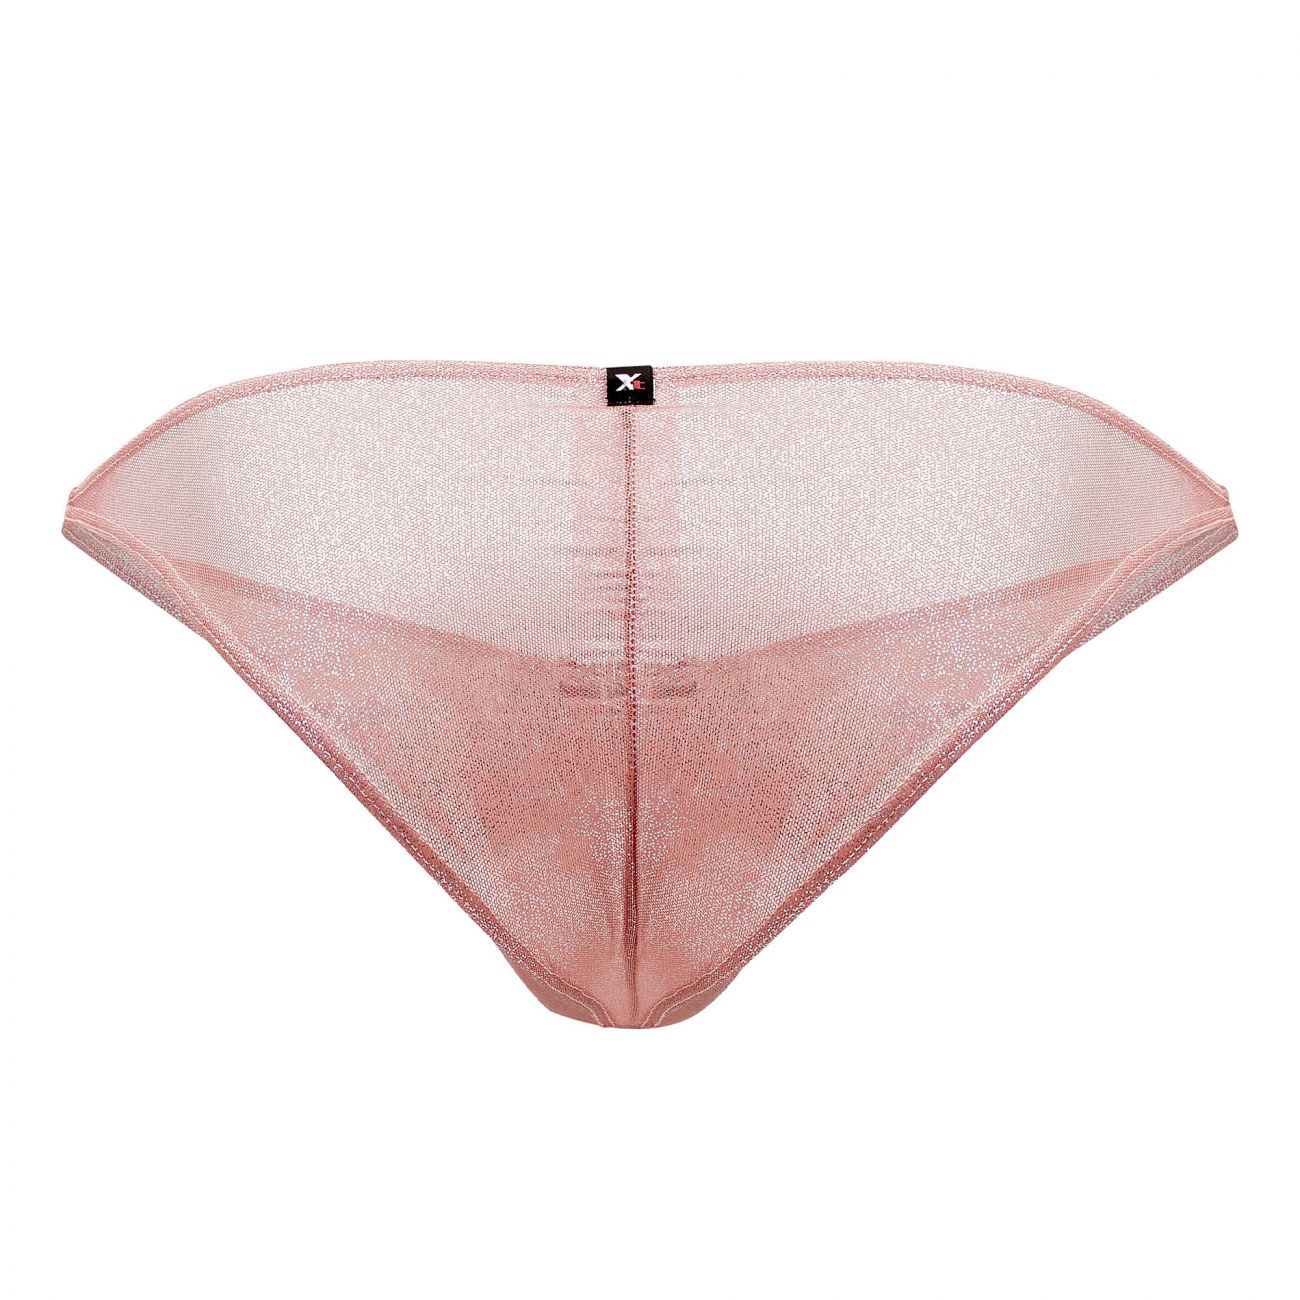 Xtremen 91097X Microfiber Bikini Pink Plus Sizes